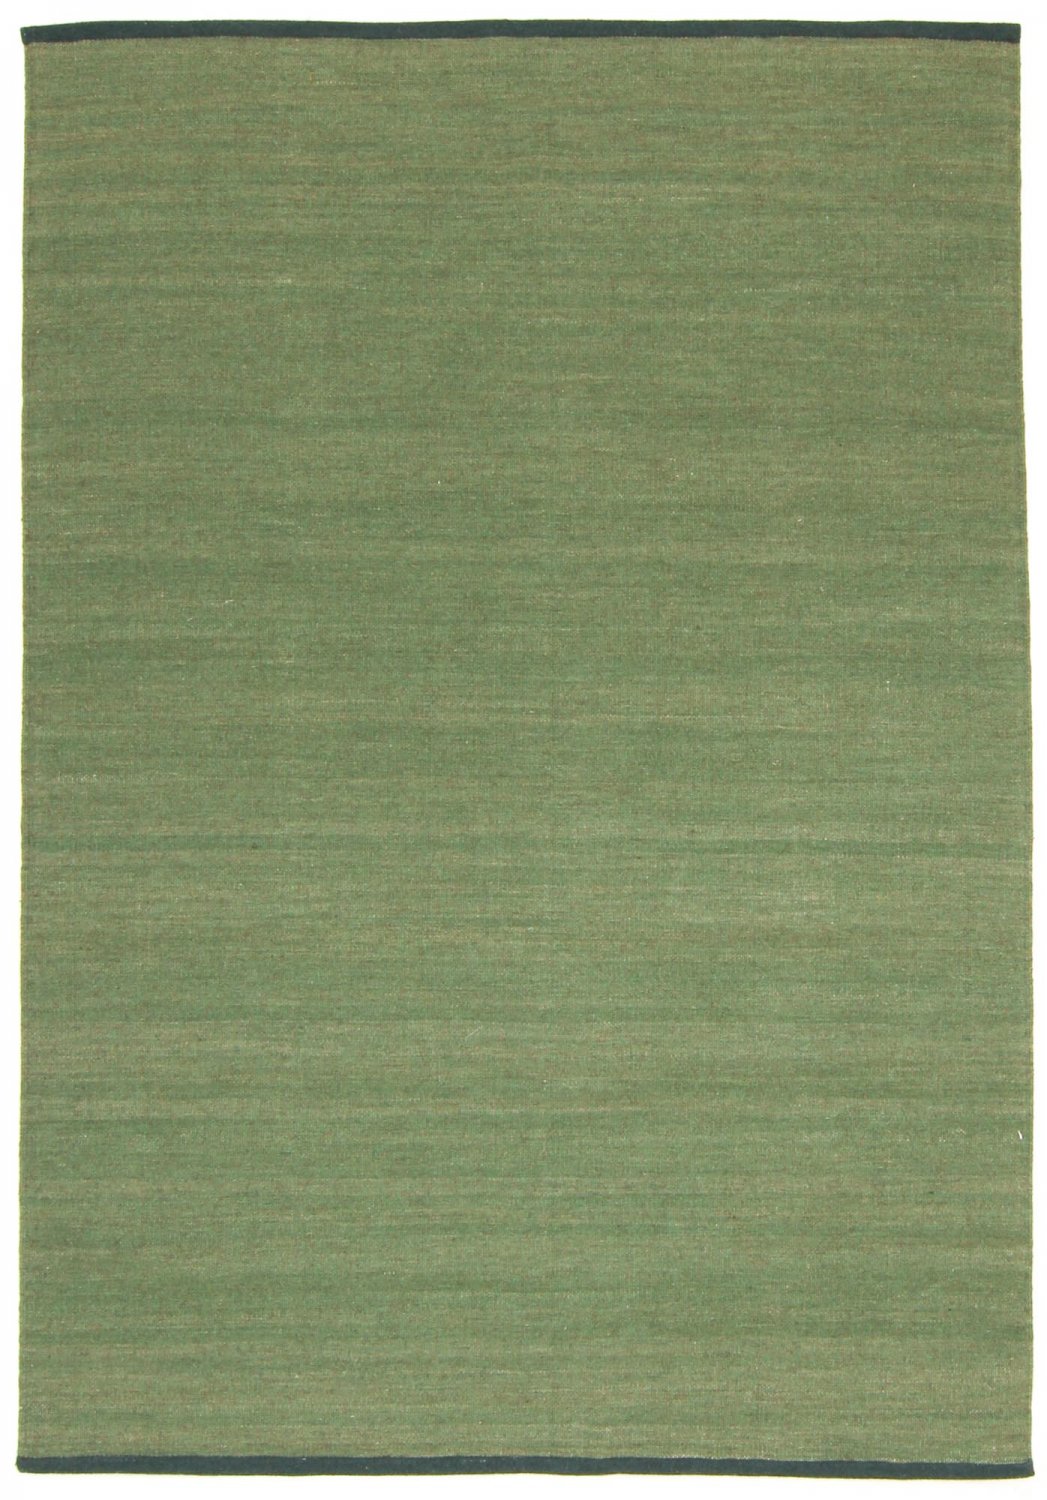 Wollen-vloerkleed - Kandia (groen)